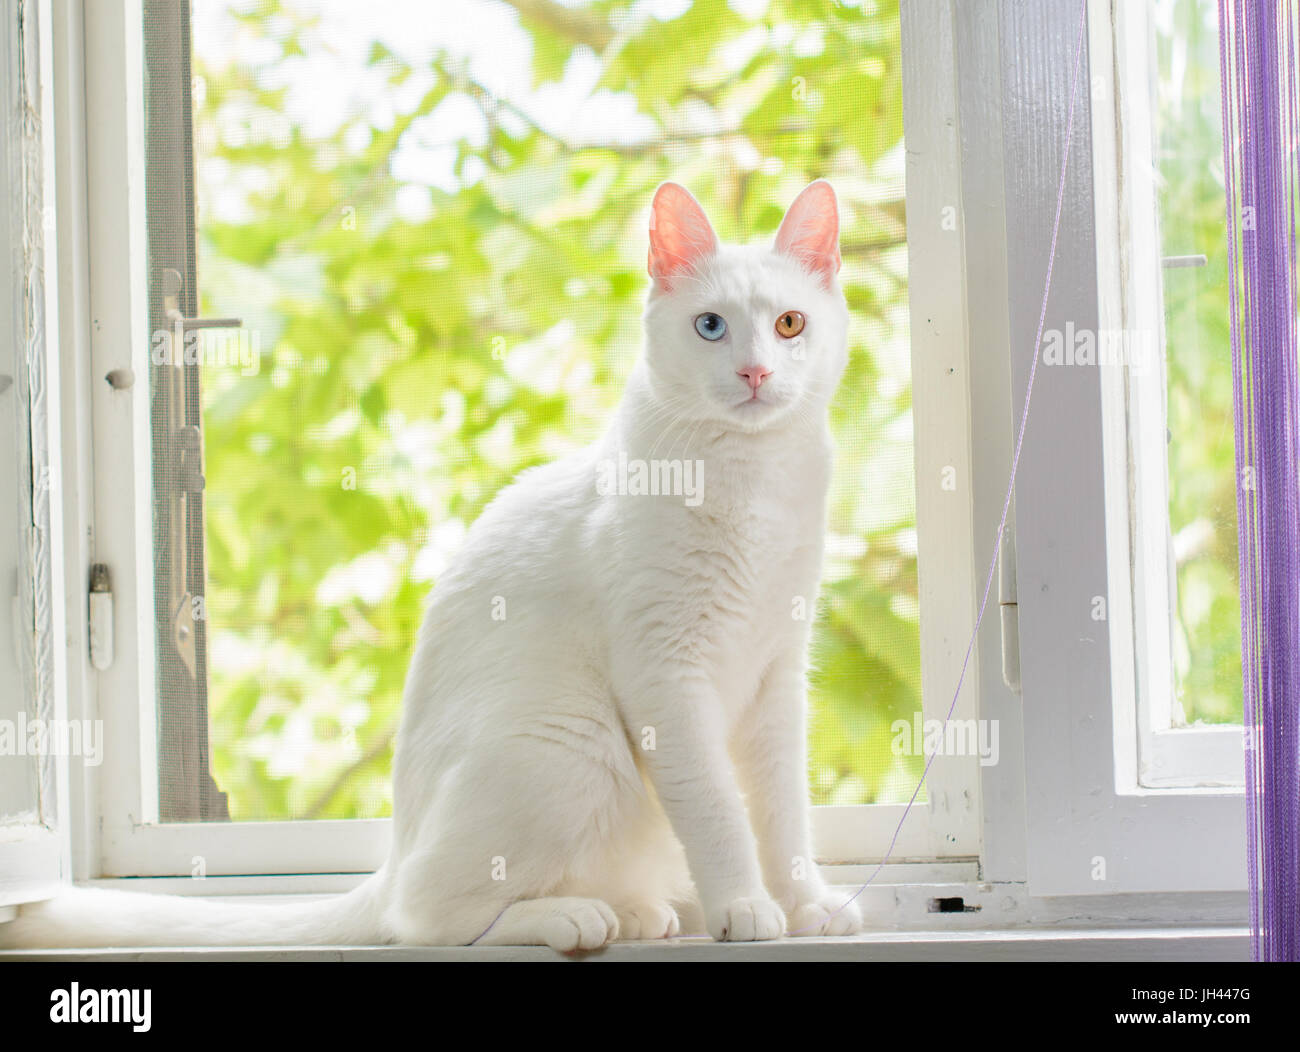 White cat which has heterochromia iridum is sitting in a window. Stock Photo